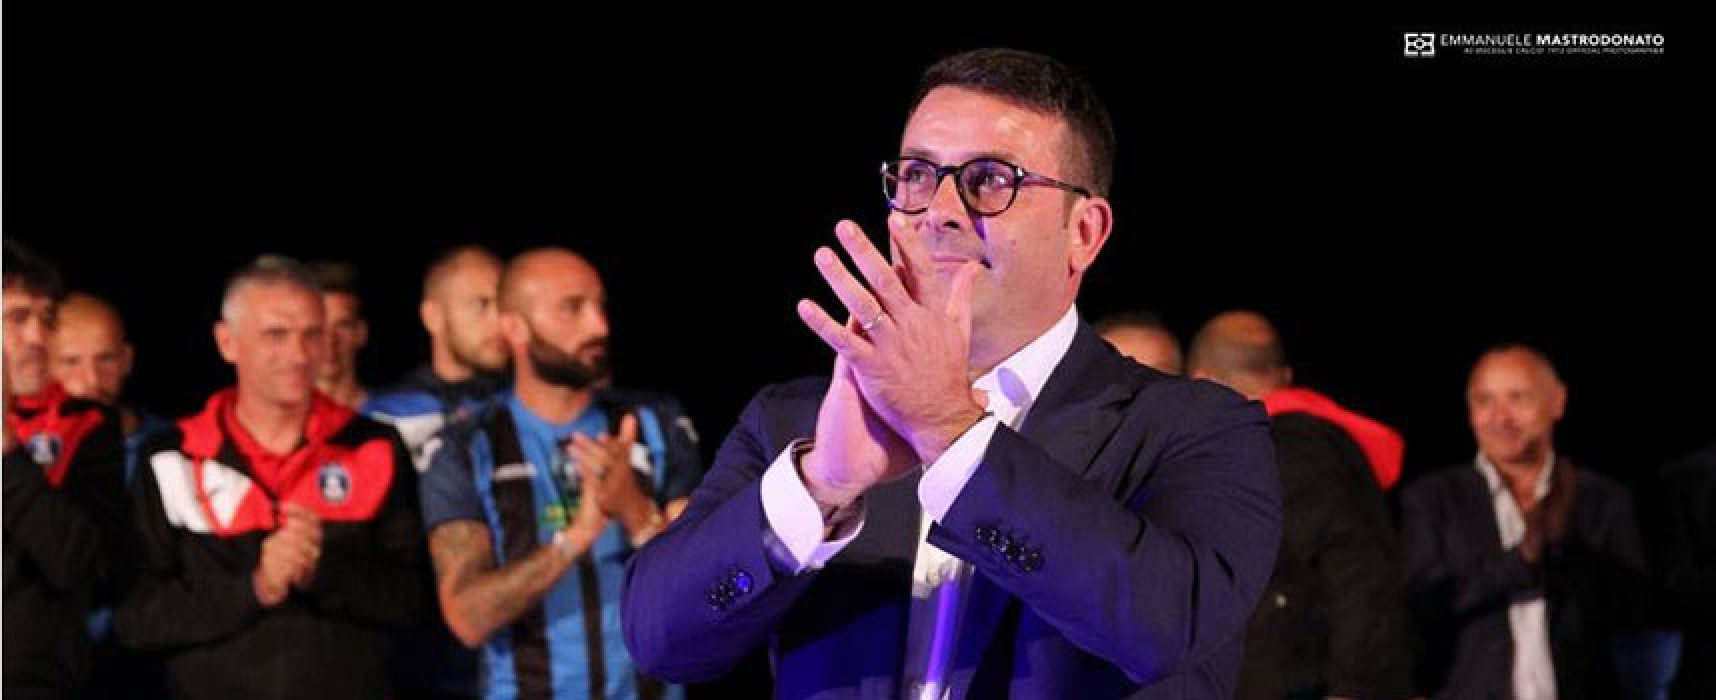 Canonico annuncia le dimissioni da presidente del Bisceglie Calcio